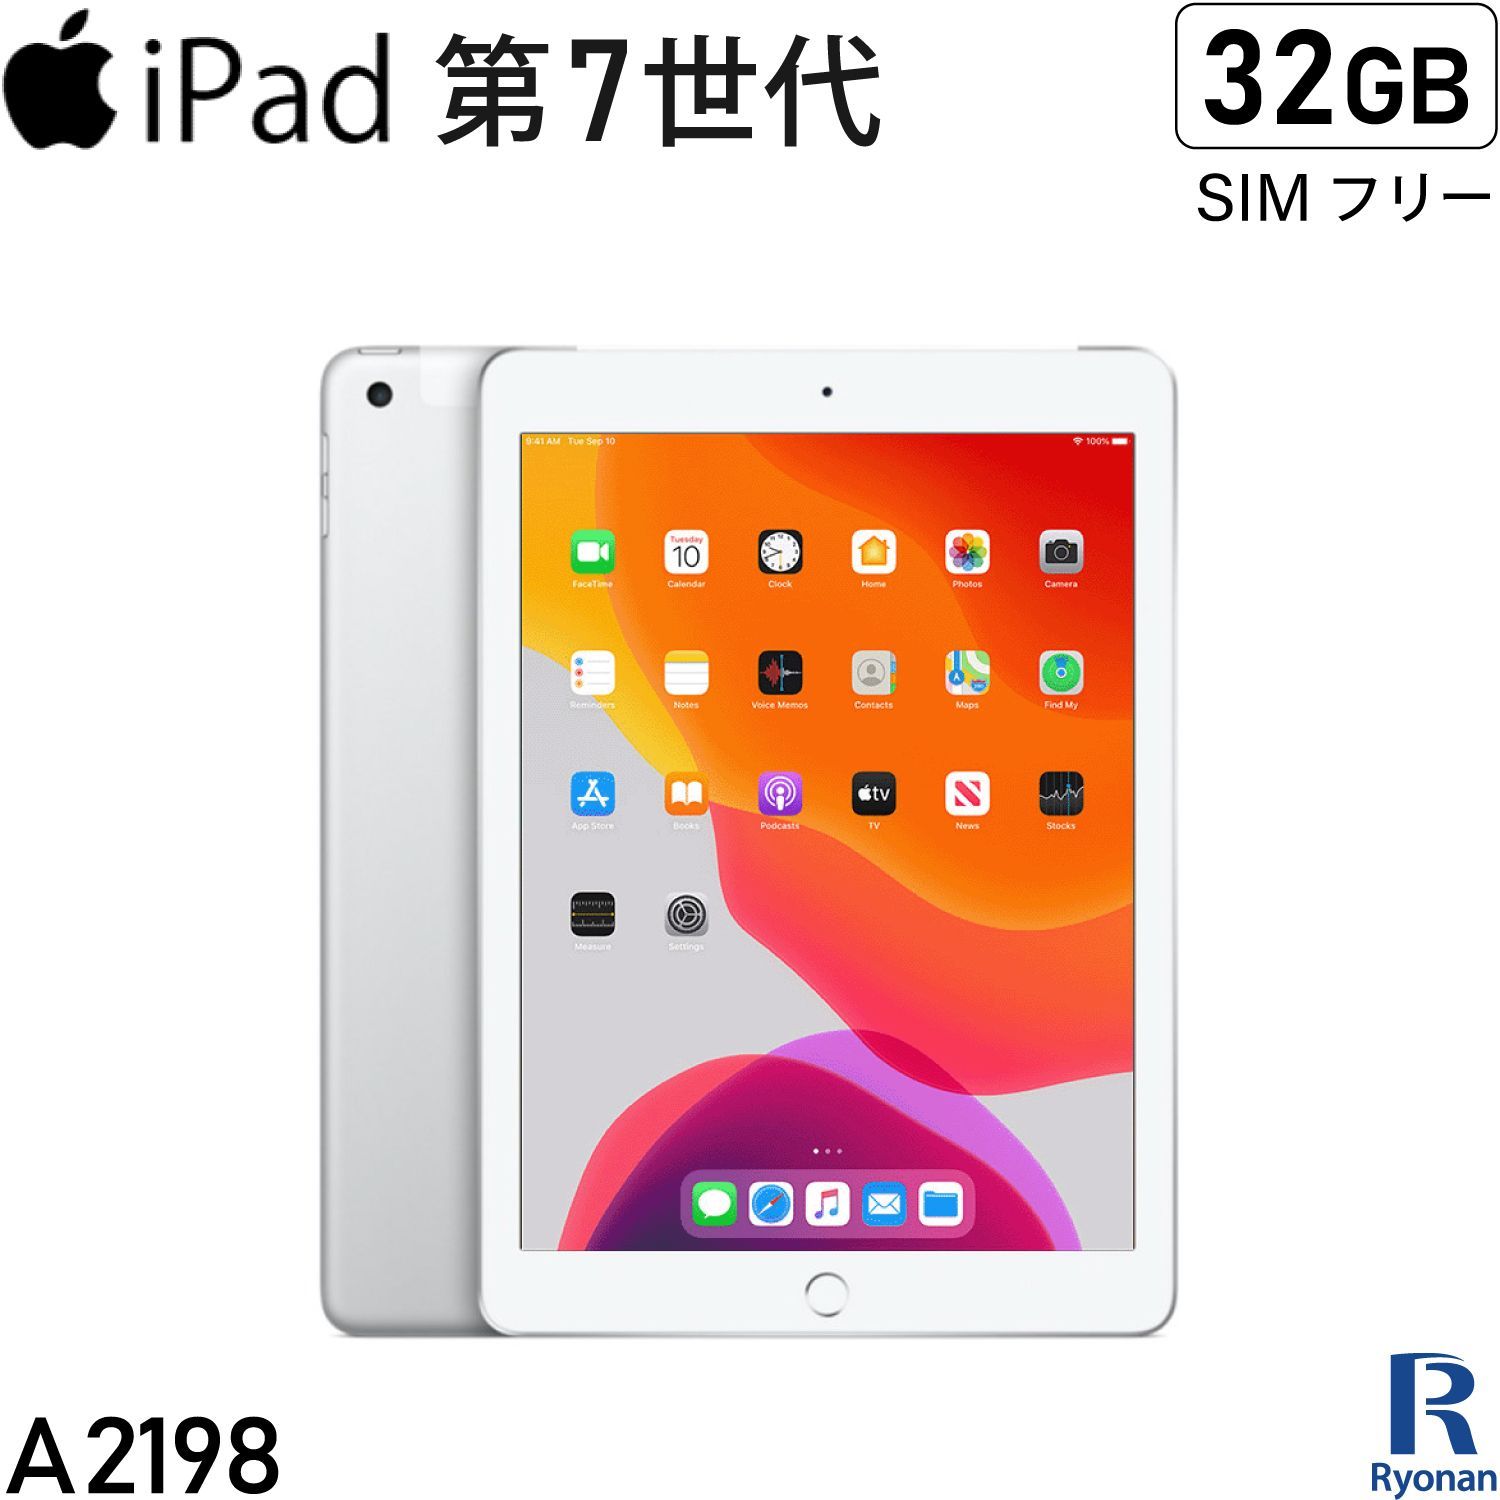 中古タブレット iPad 第7世代 / 32GB / Wi-Fi+Cellular / 10.2インチ Retina ディスプレイ / タブレット /  中古 アイパッド A2198 シルバー SIMフリー 2019年モデル iPad7 Apple - メルカリ